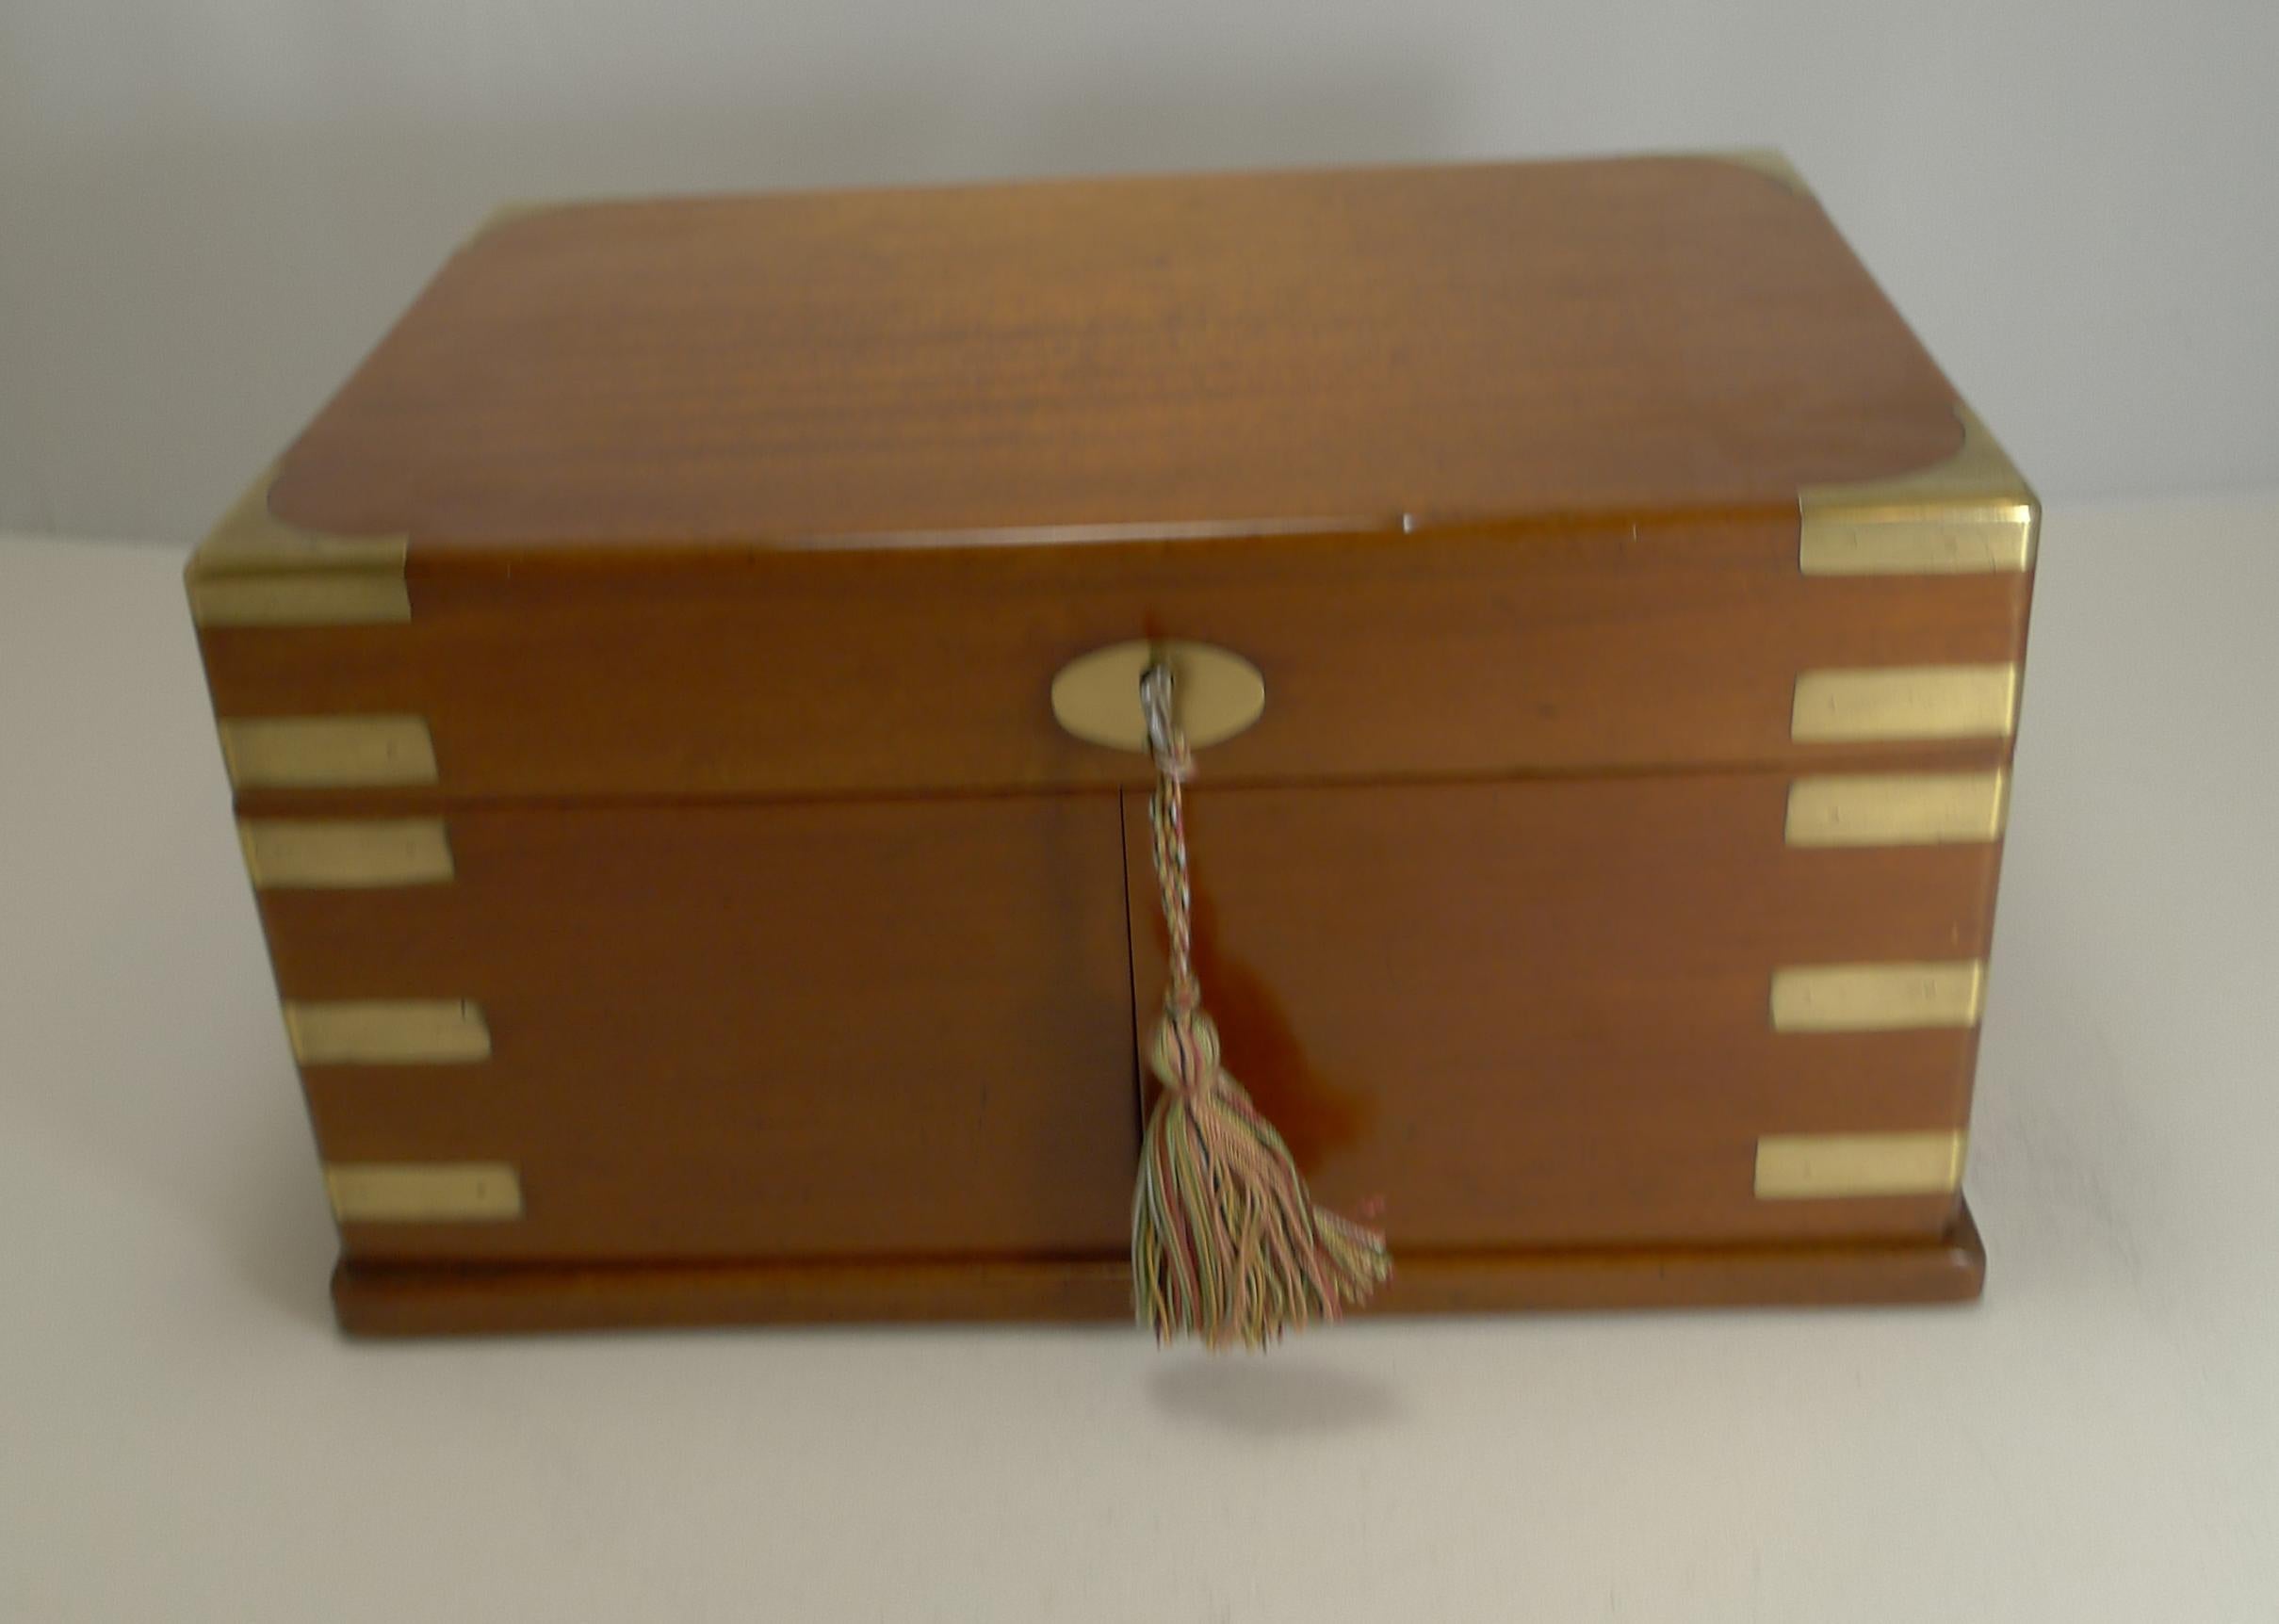 Late Victorian Brass Bound Mahogany Games Box / Compendium, circa 1890-1900